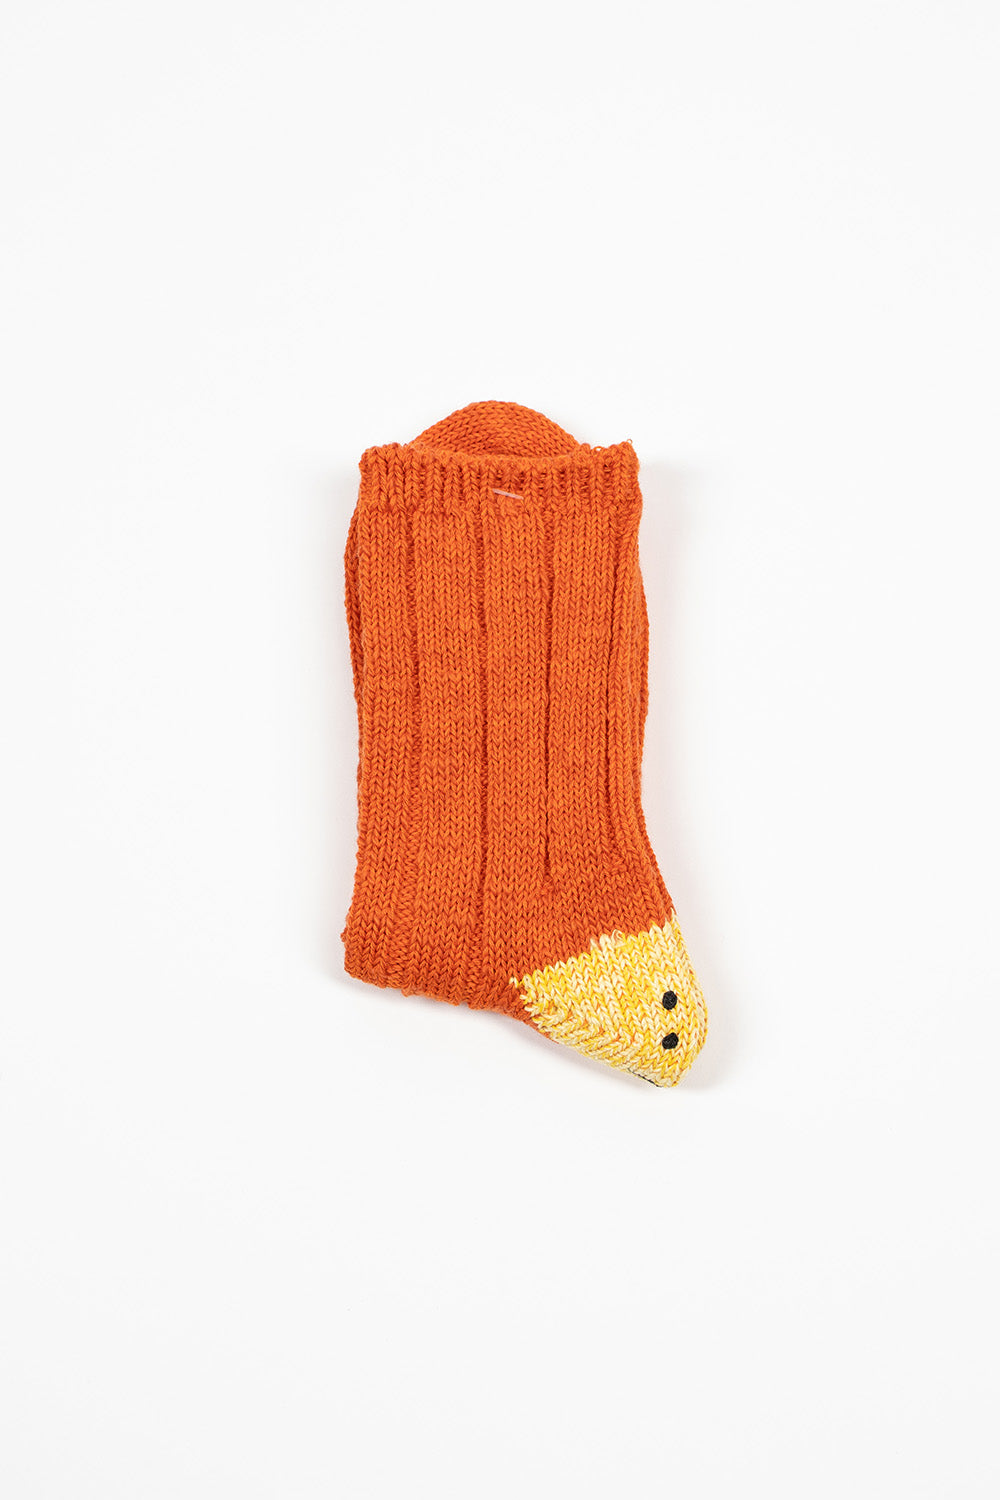 EK-1582 Ivy Rainbowy Happy Heel Socks Orange